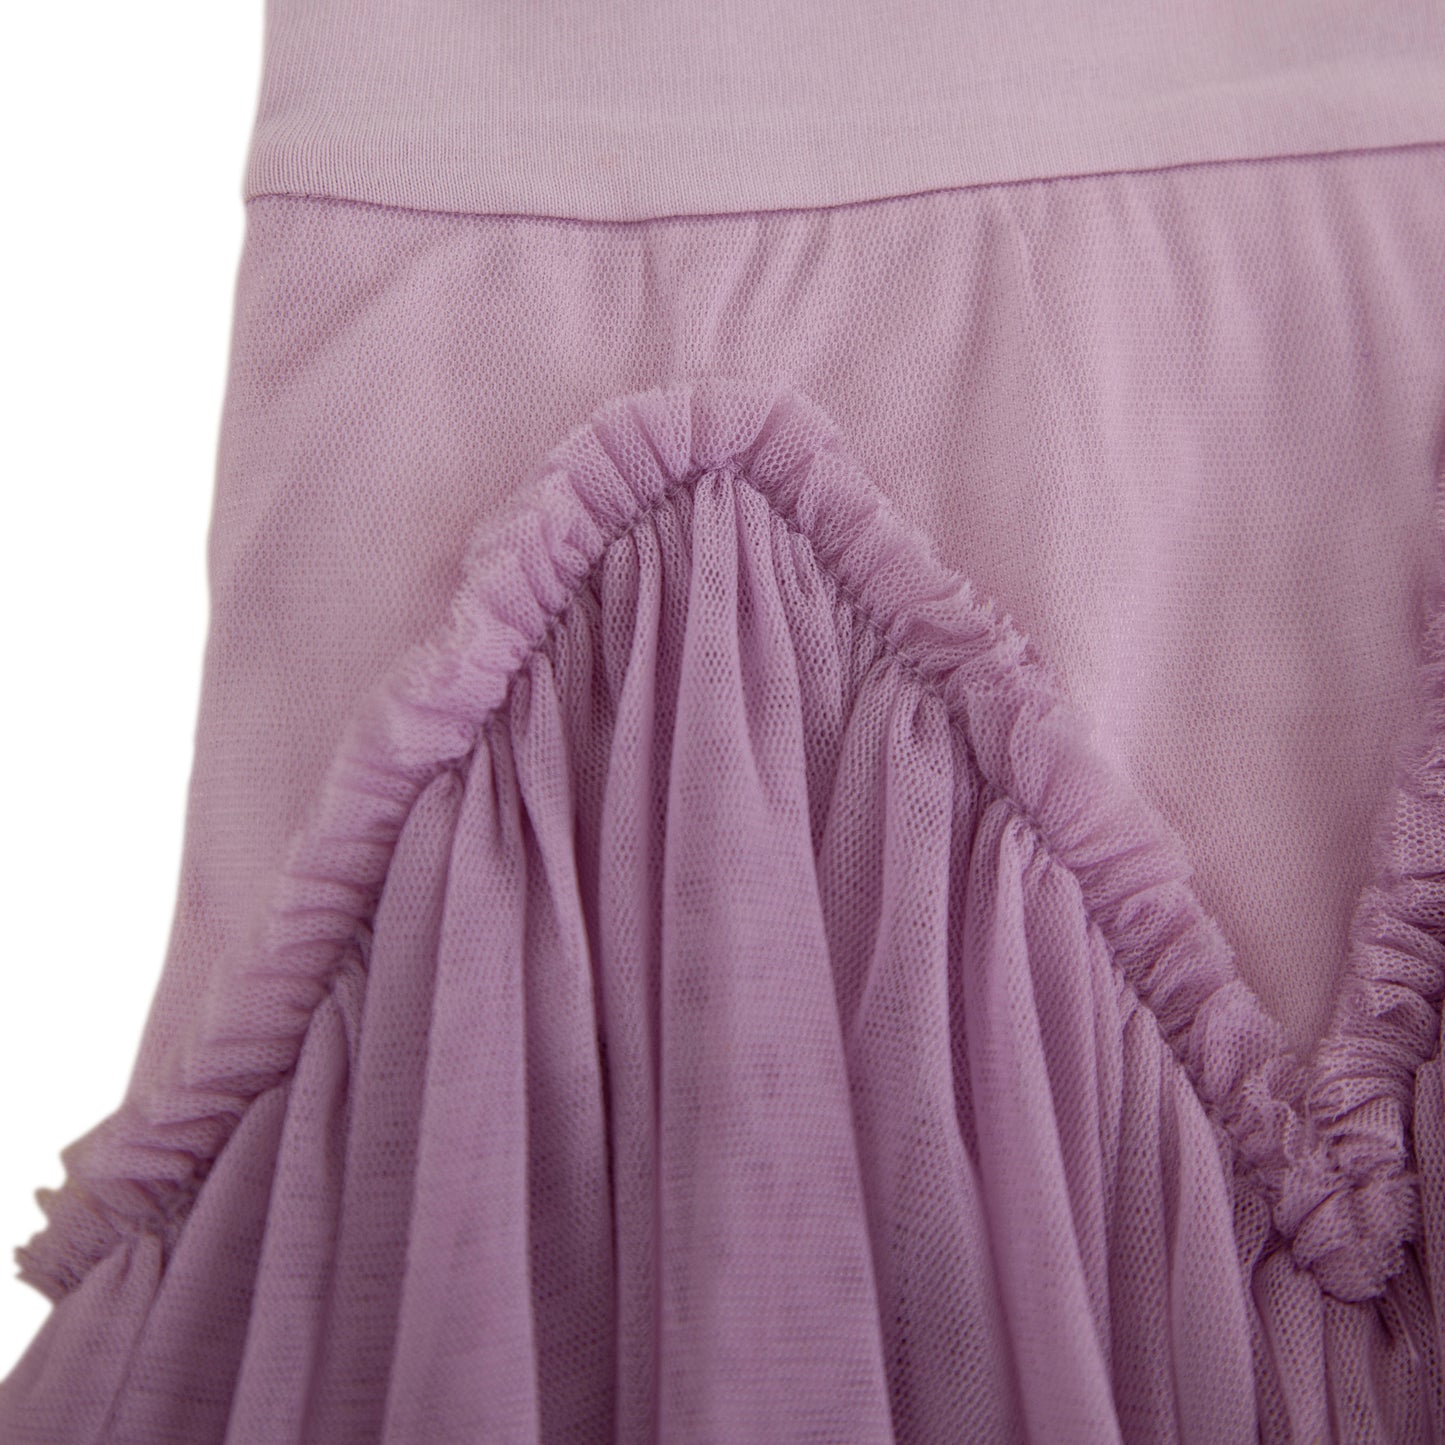 Velvet Ballet Dress Lavender